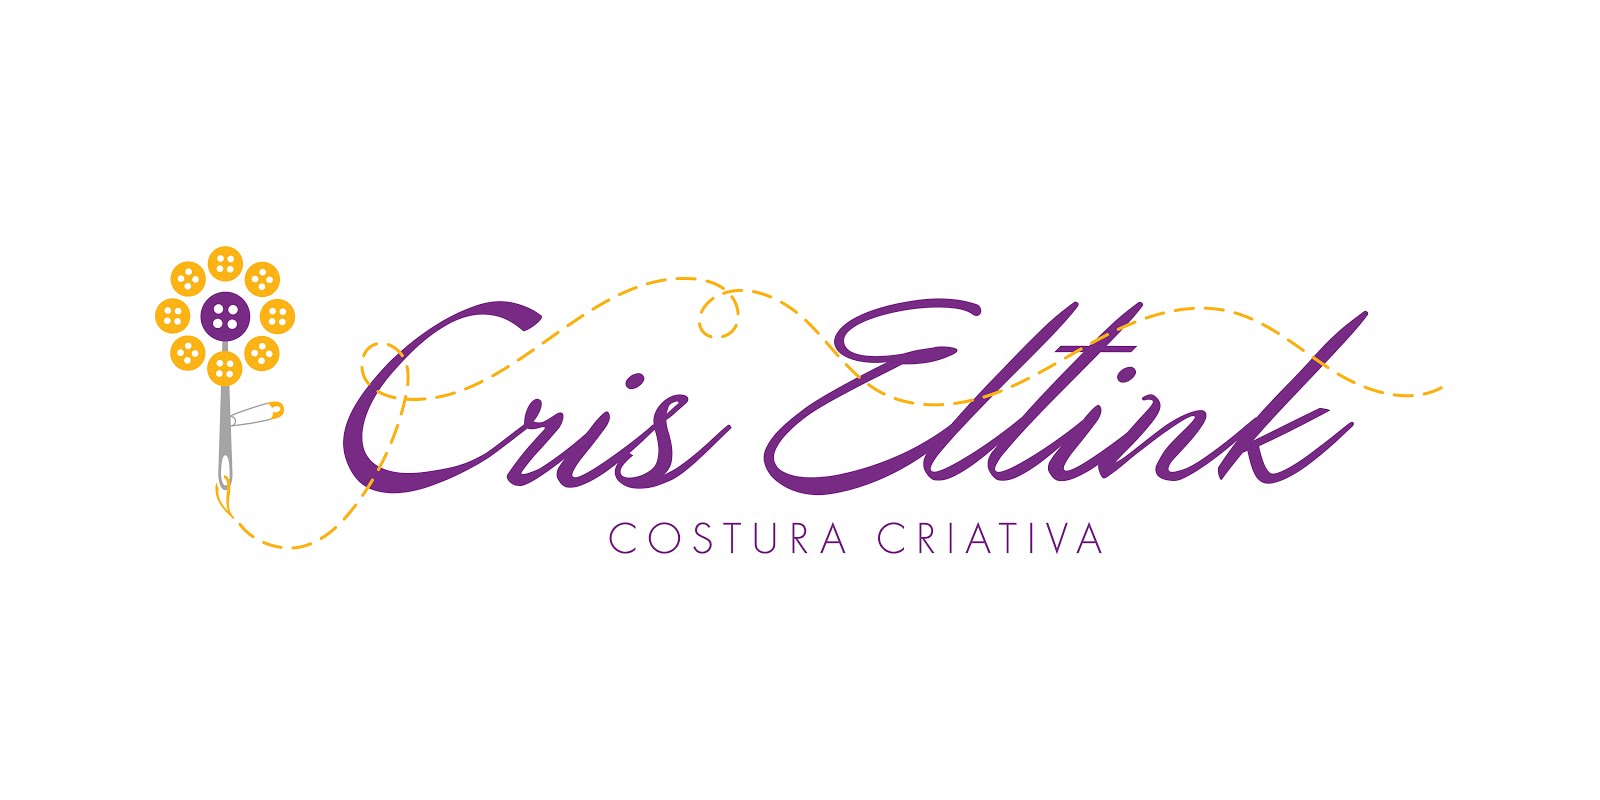 Cris Eltink - costura criativa